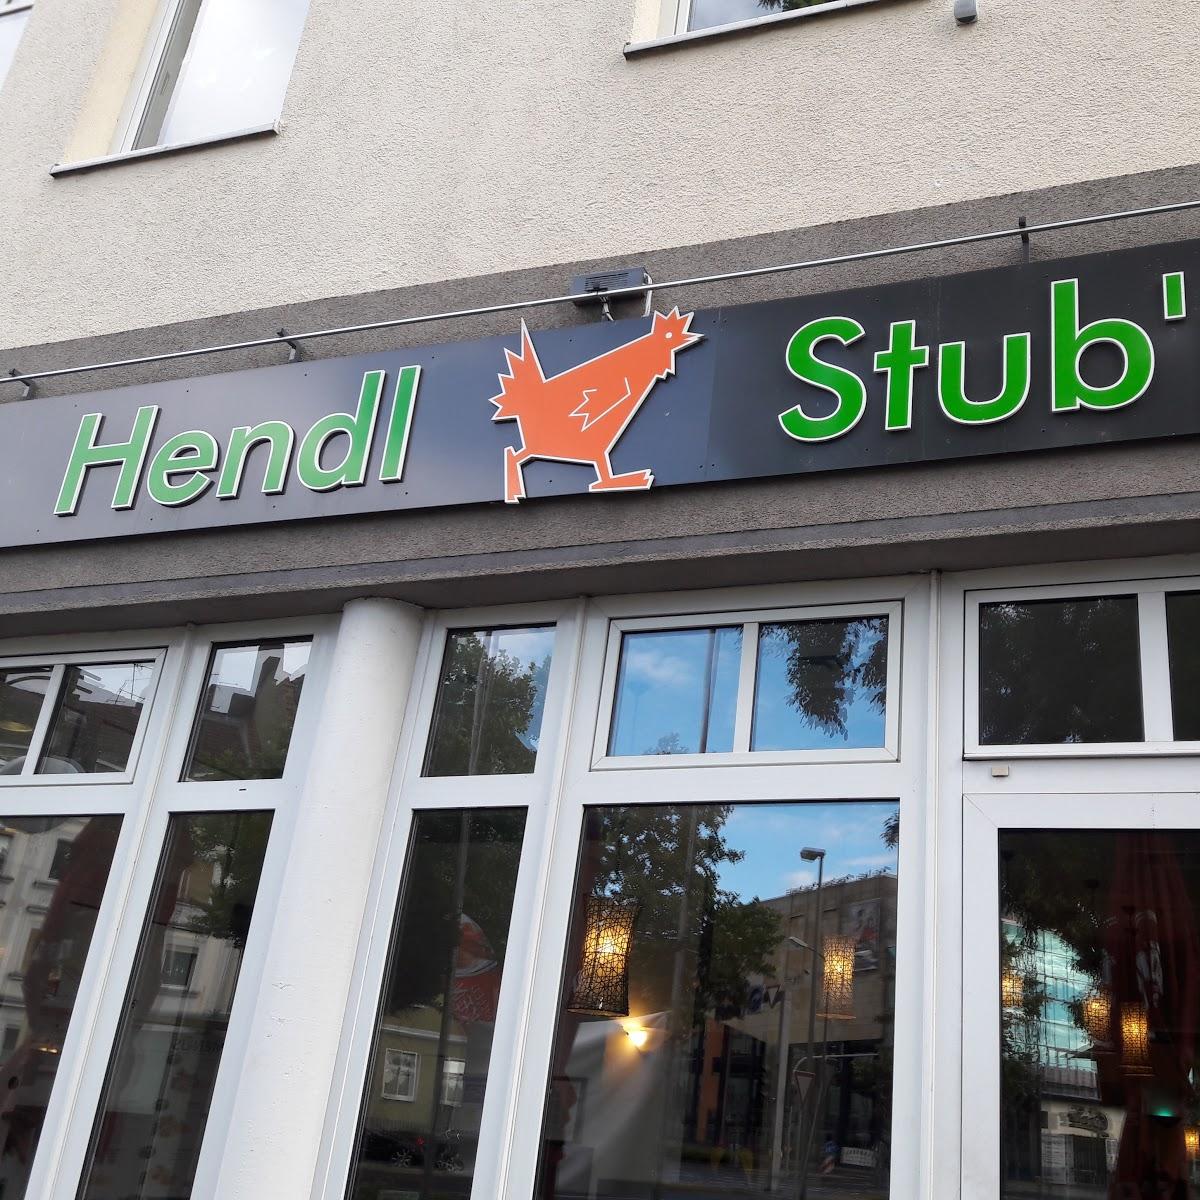 Restaurant Hendl Stubn Fulda